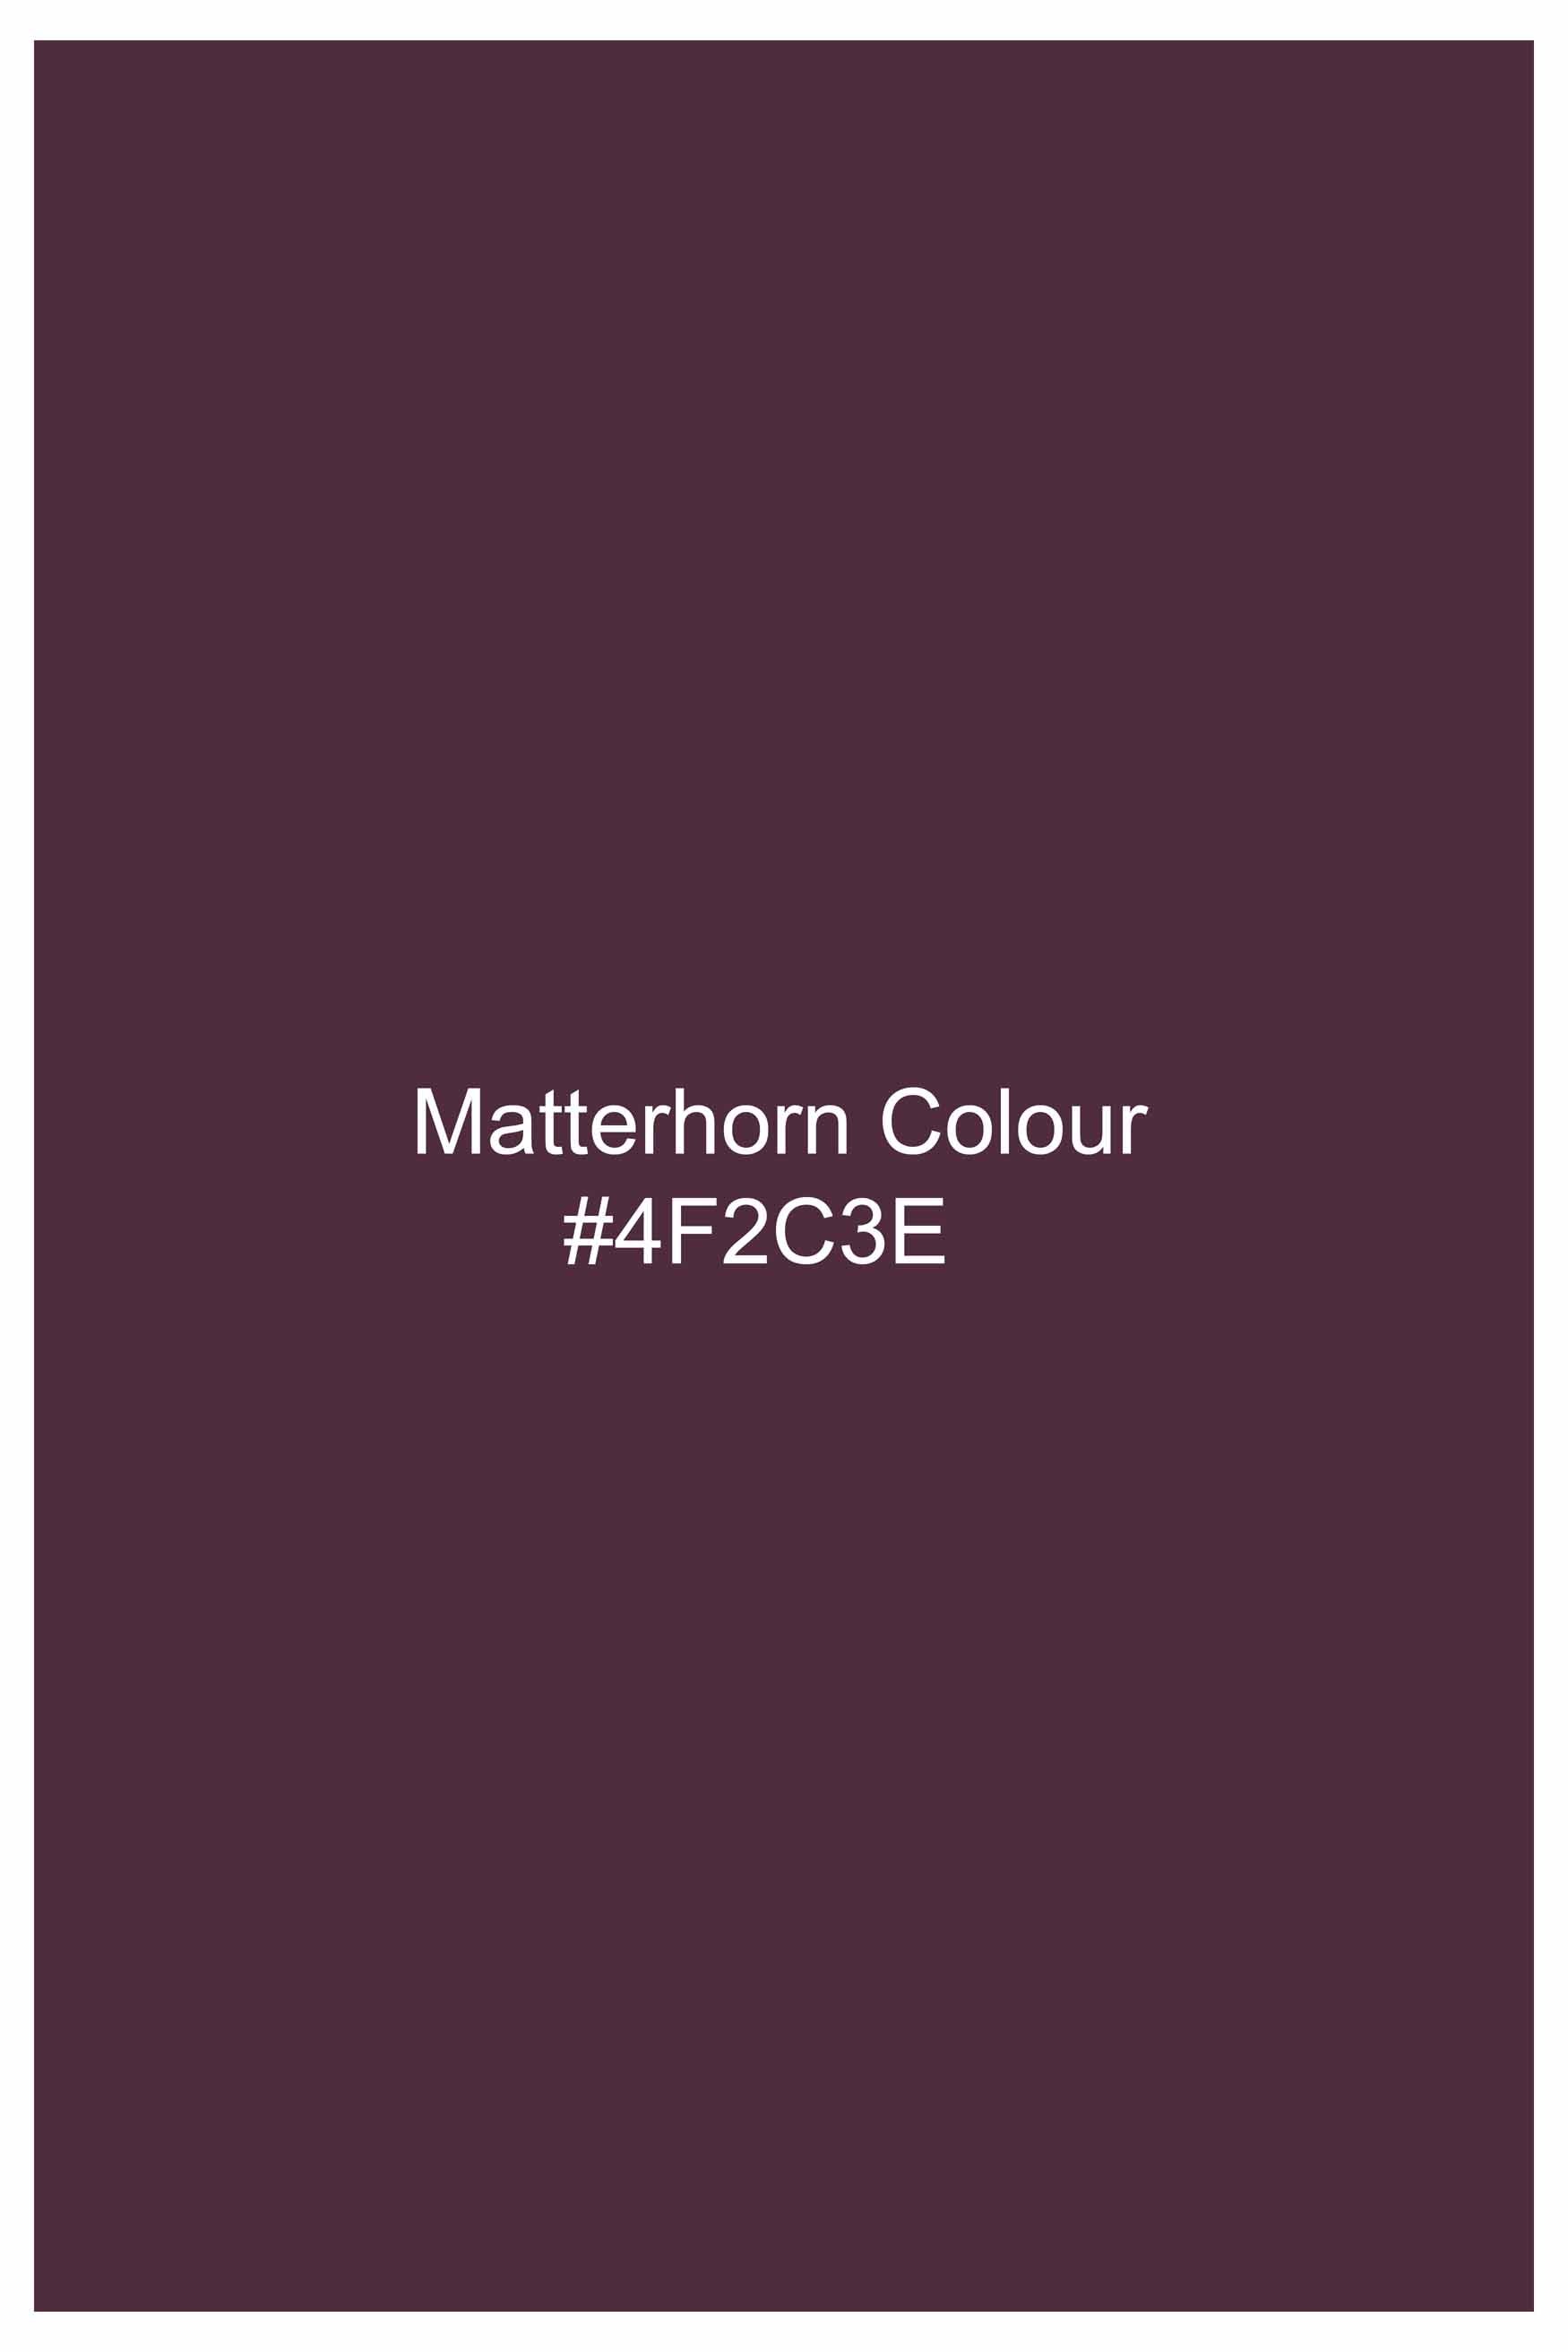 Matterhorn Maroon Subtle Sheen Super Soft Premium Cotton Shirt